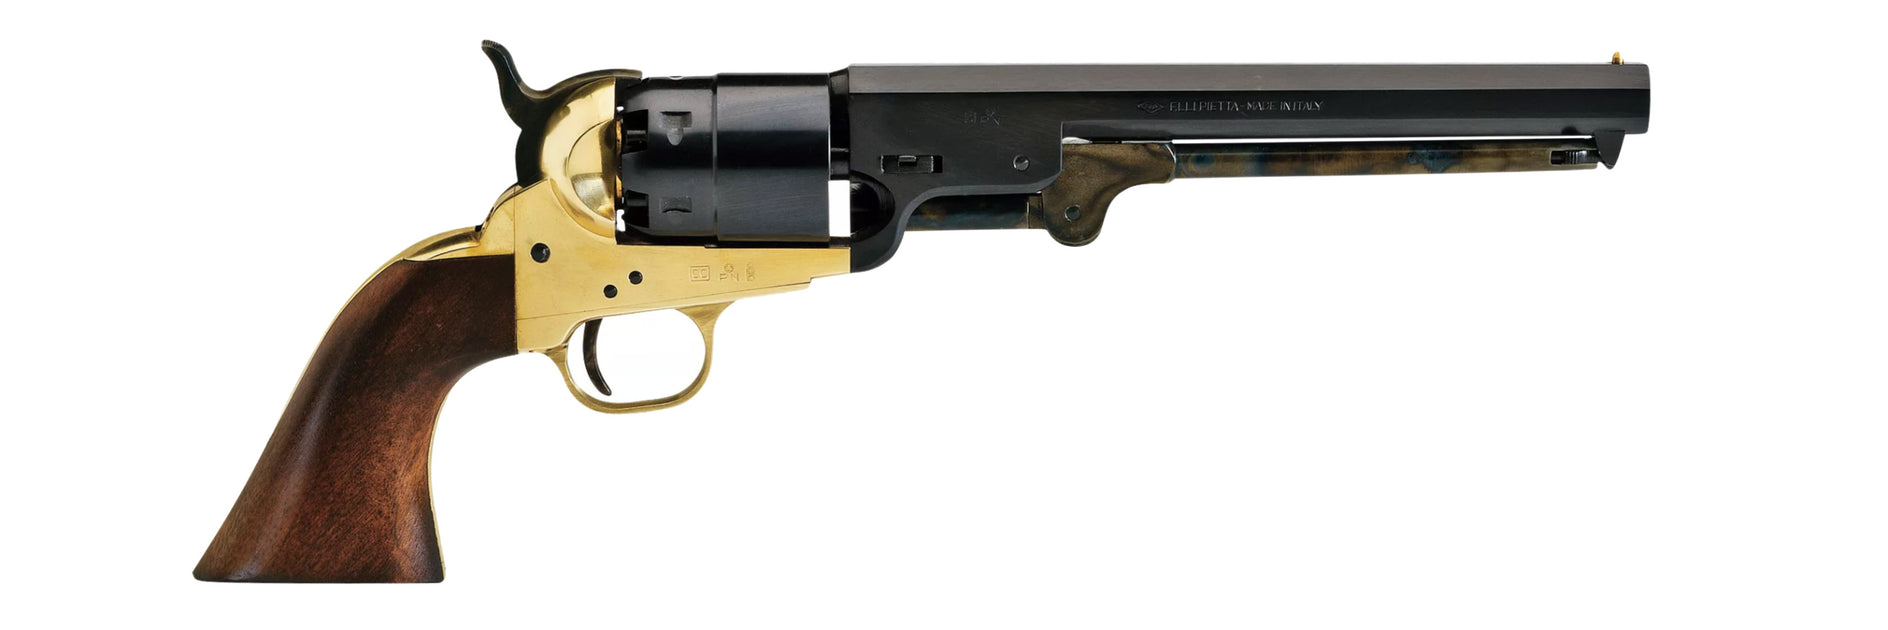 F.LLI Pietta Black Powder Revolver, 44 cal, s/544896,7 3/8